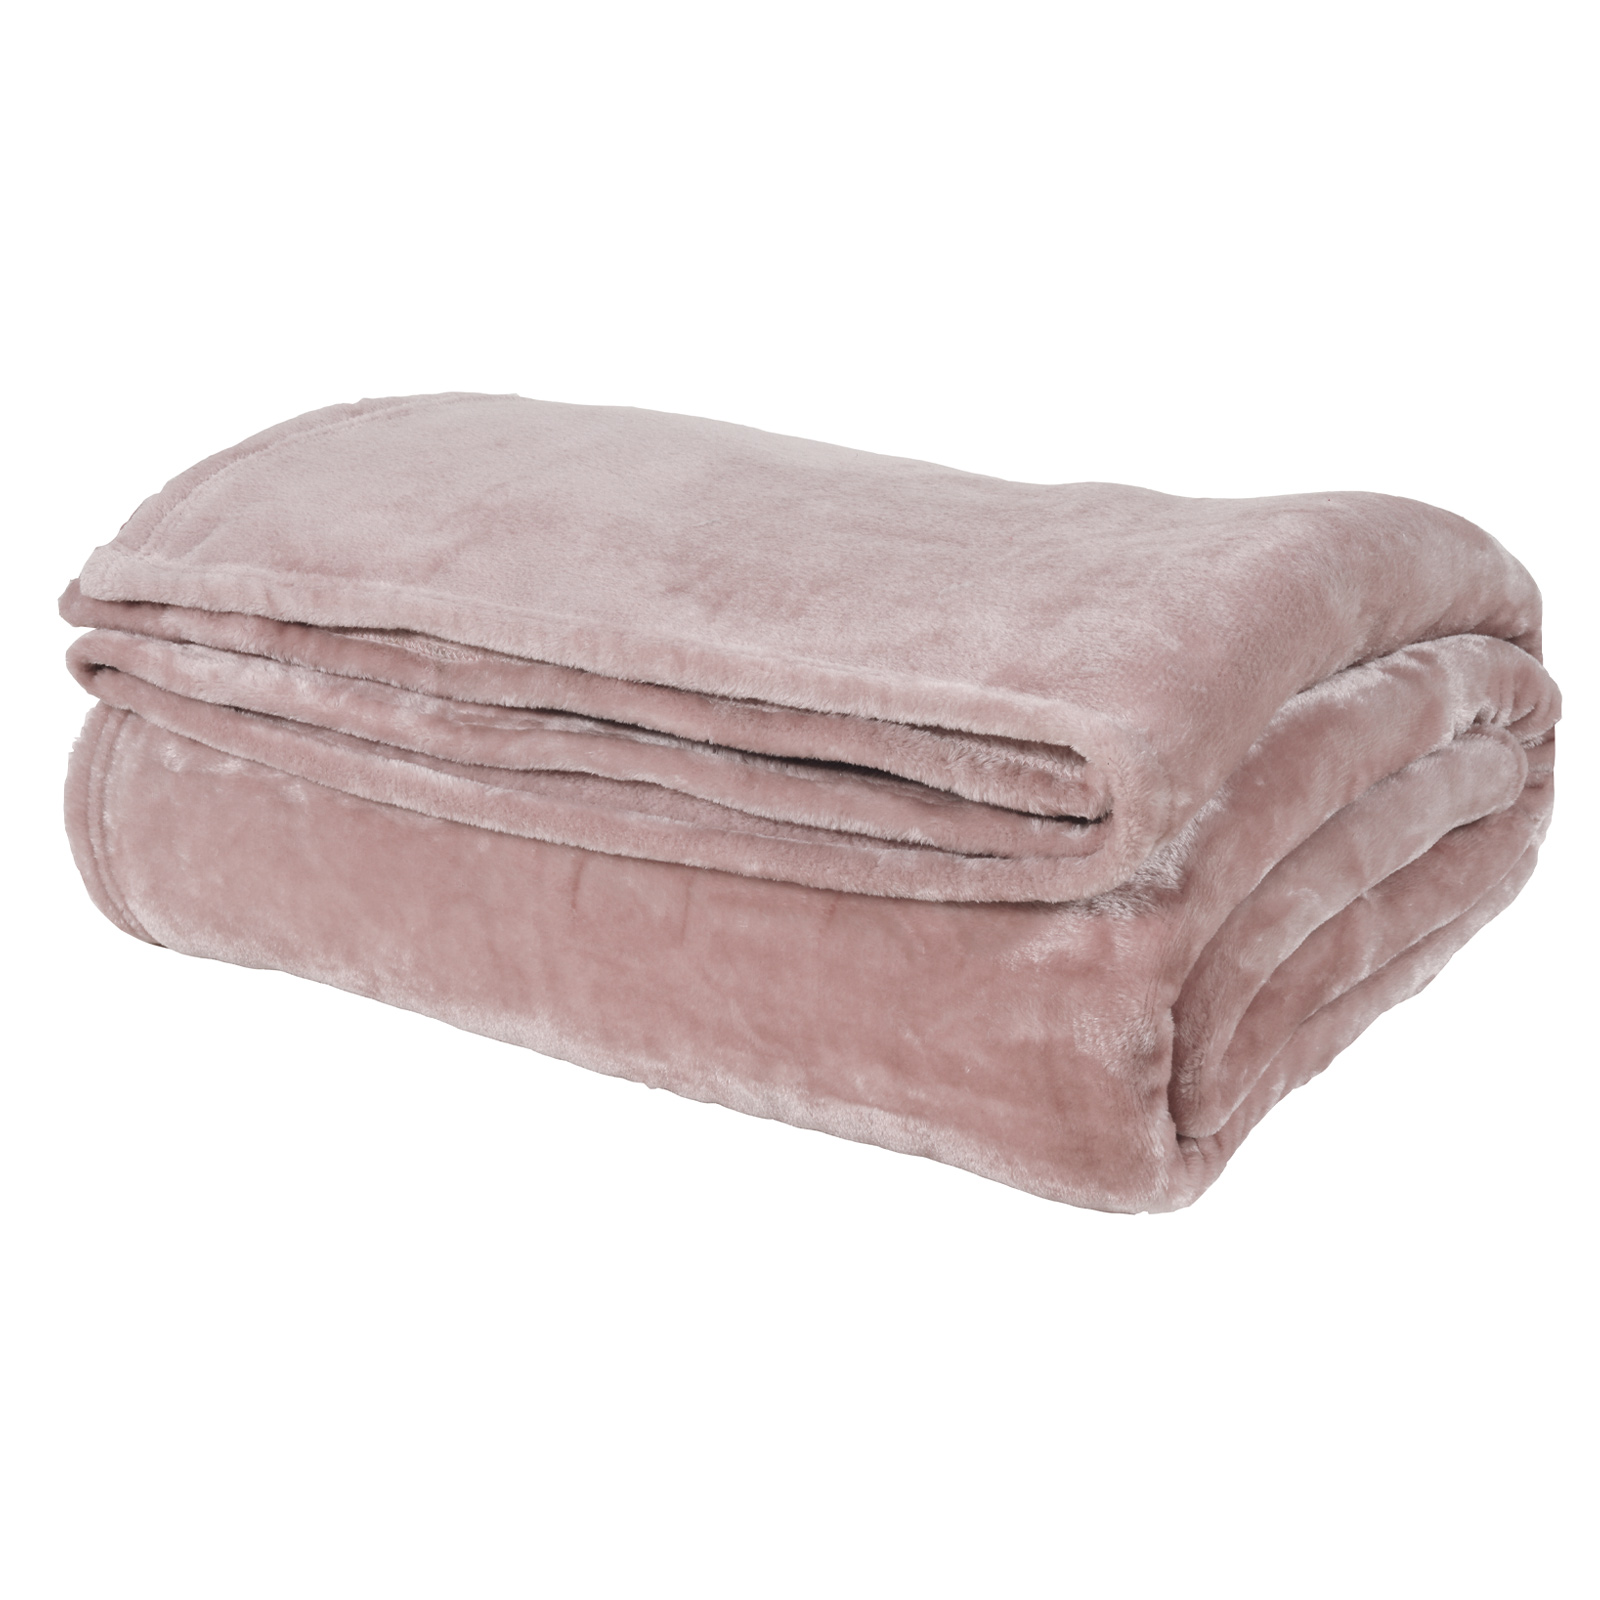 Κουβέρτα Κούνιας 110×150εκ. Μονόχρωμη Velour Relax 1346 Ροζ Das Baby (Ύφασμα: Polyester, Χρώμα: Ροζ) – Das Baby – 620511111346